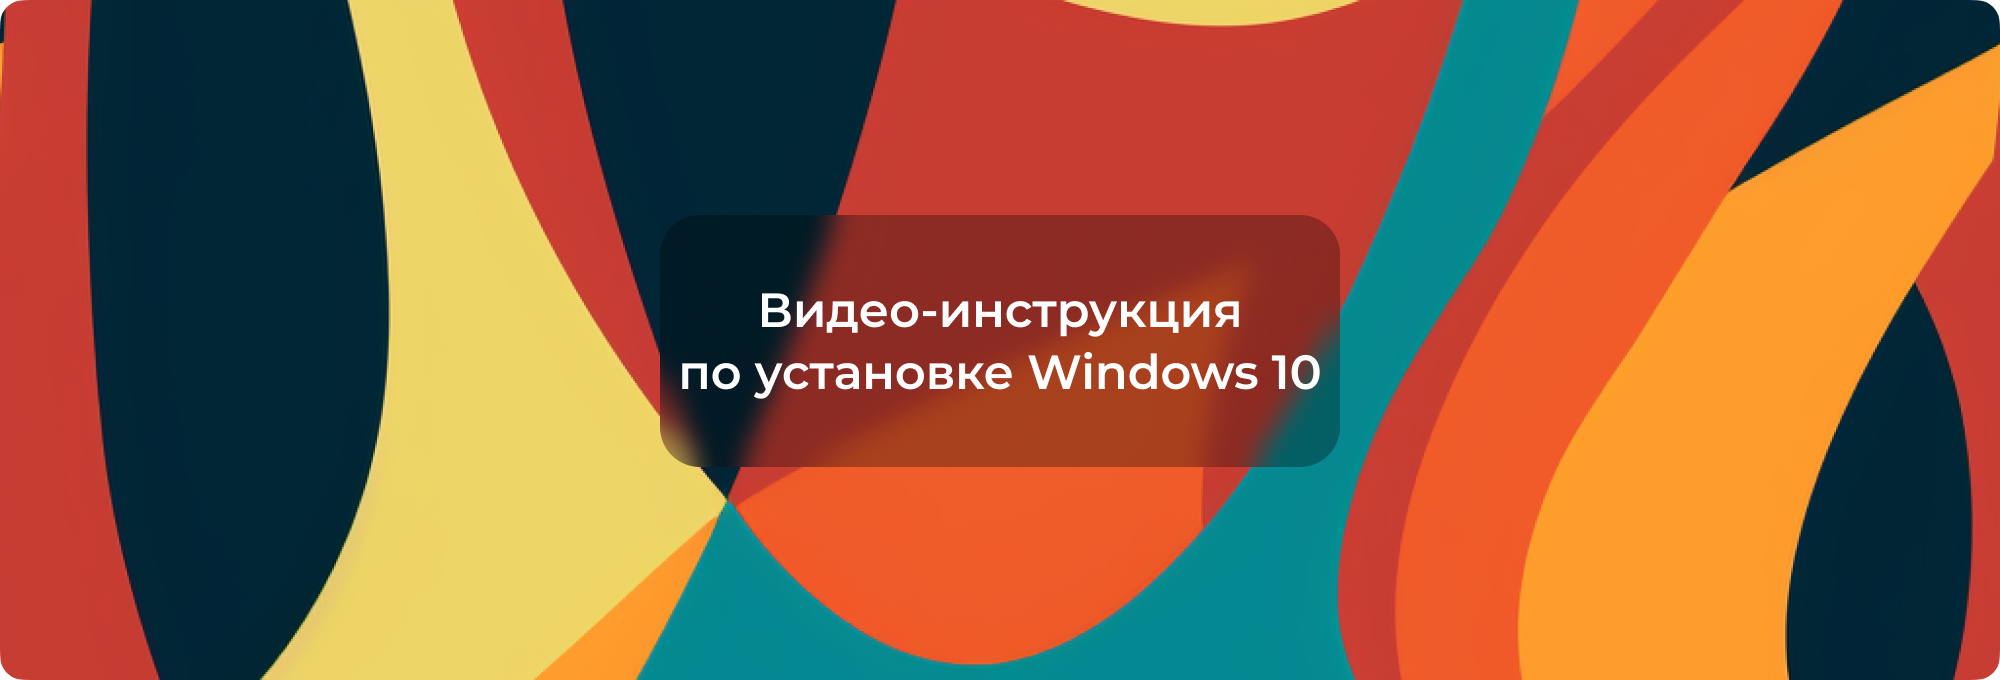 Пошаговая инструкция по установке Windows 10